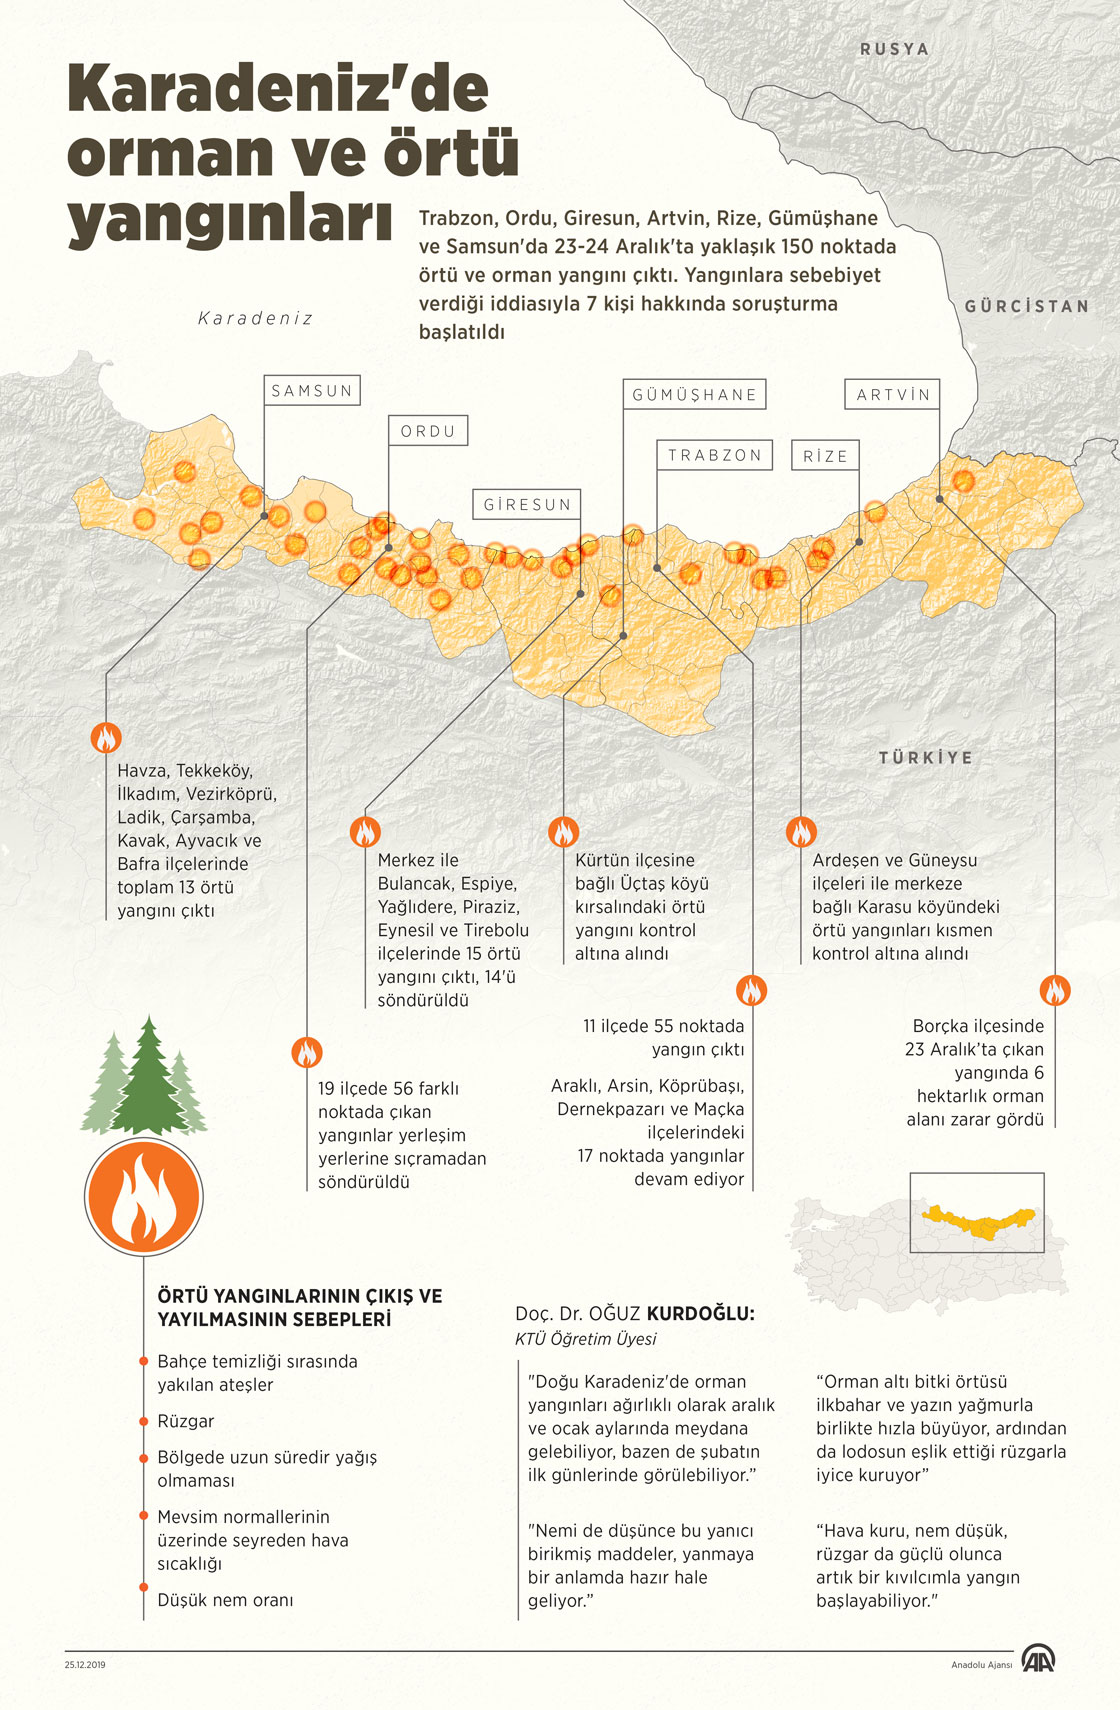 Karadeniz'de orman ve örtü yangınları